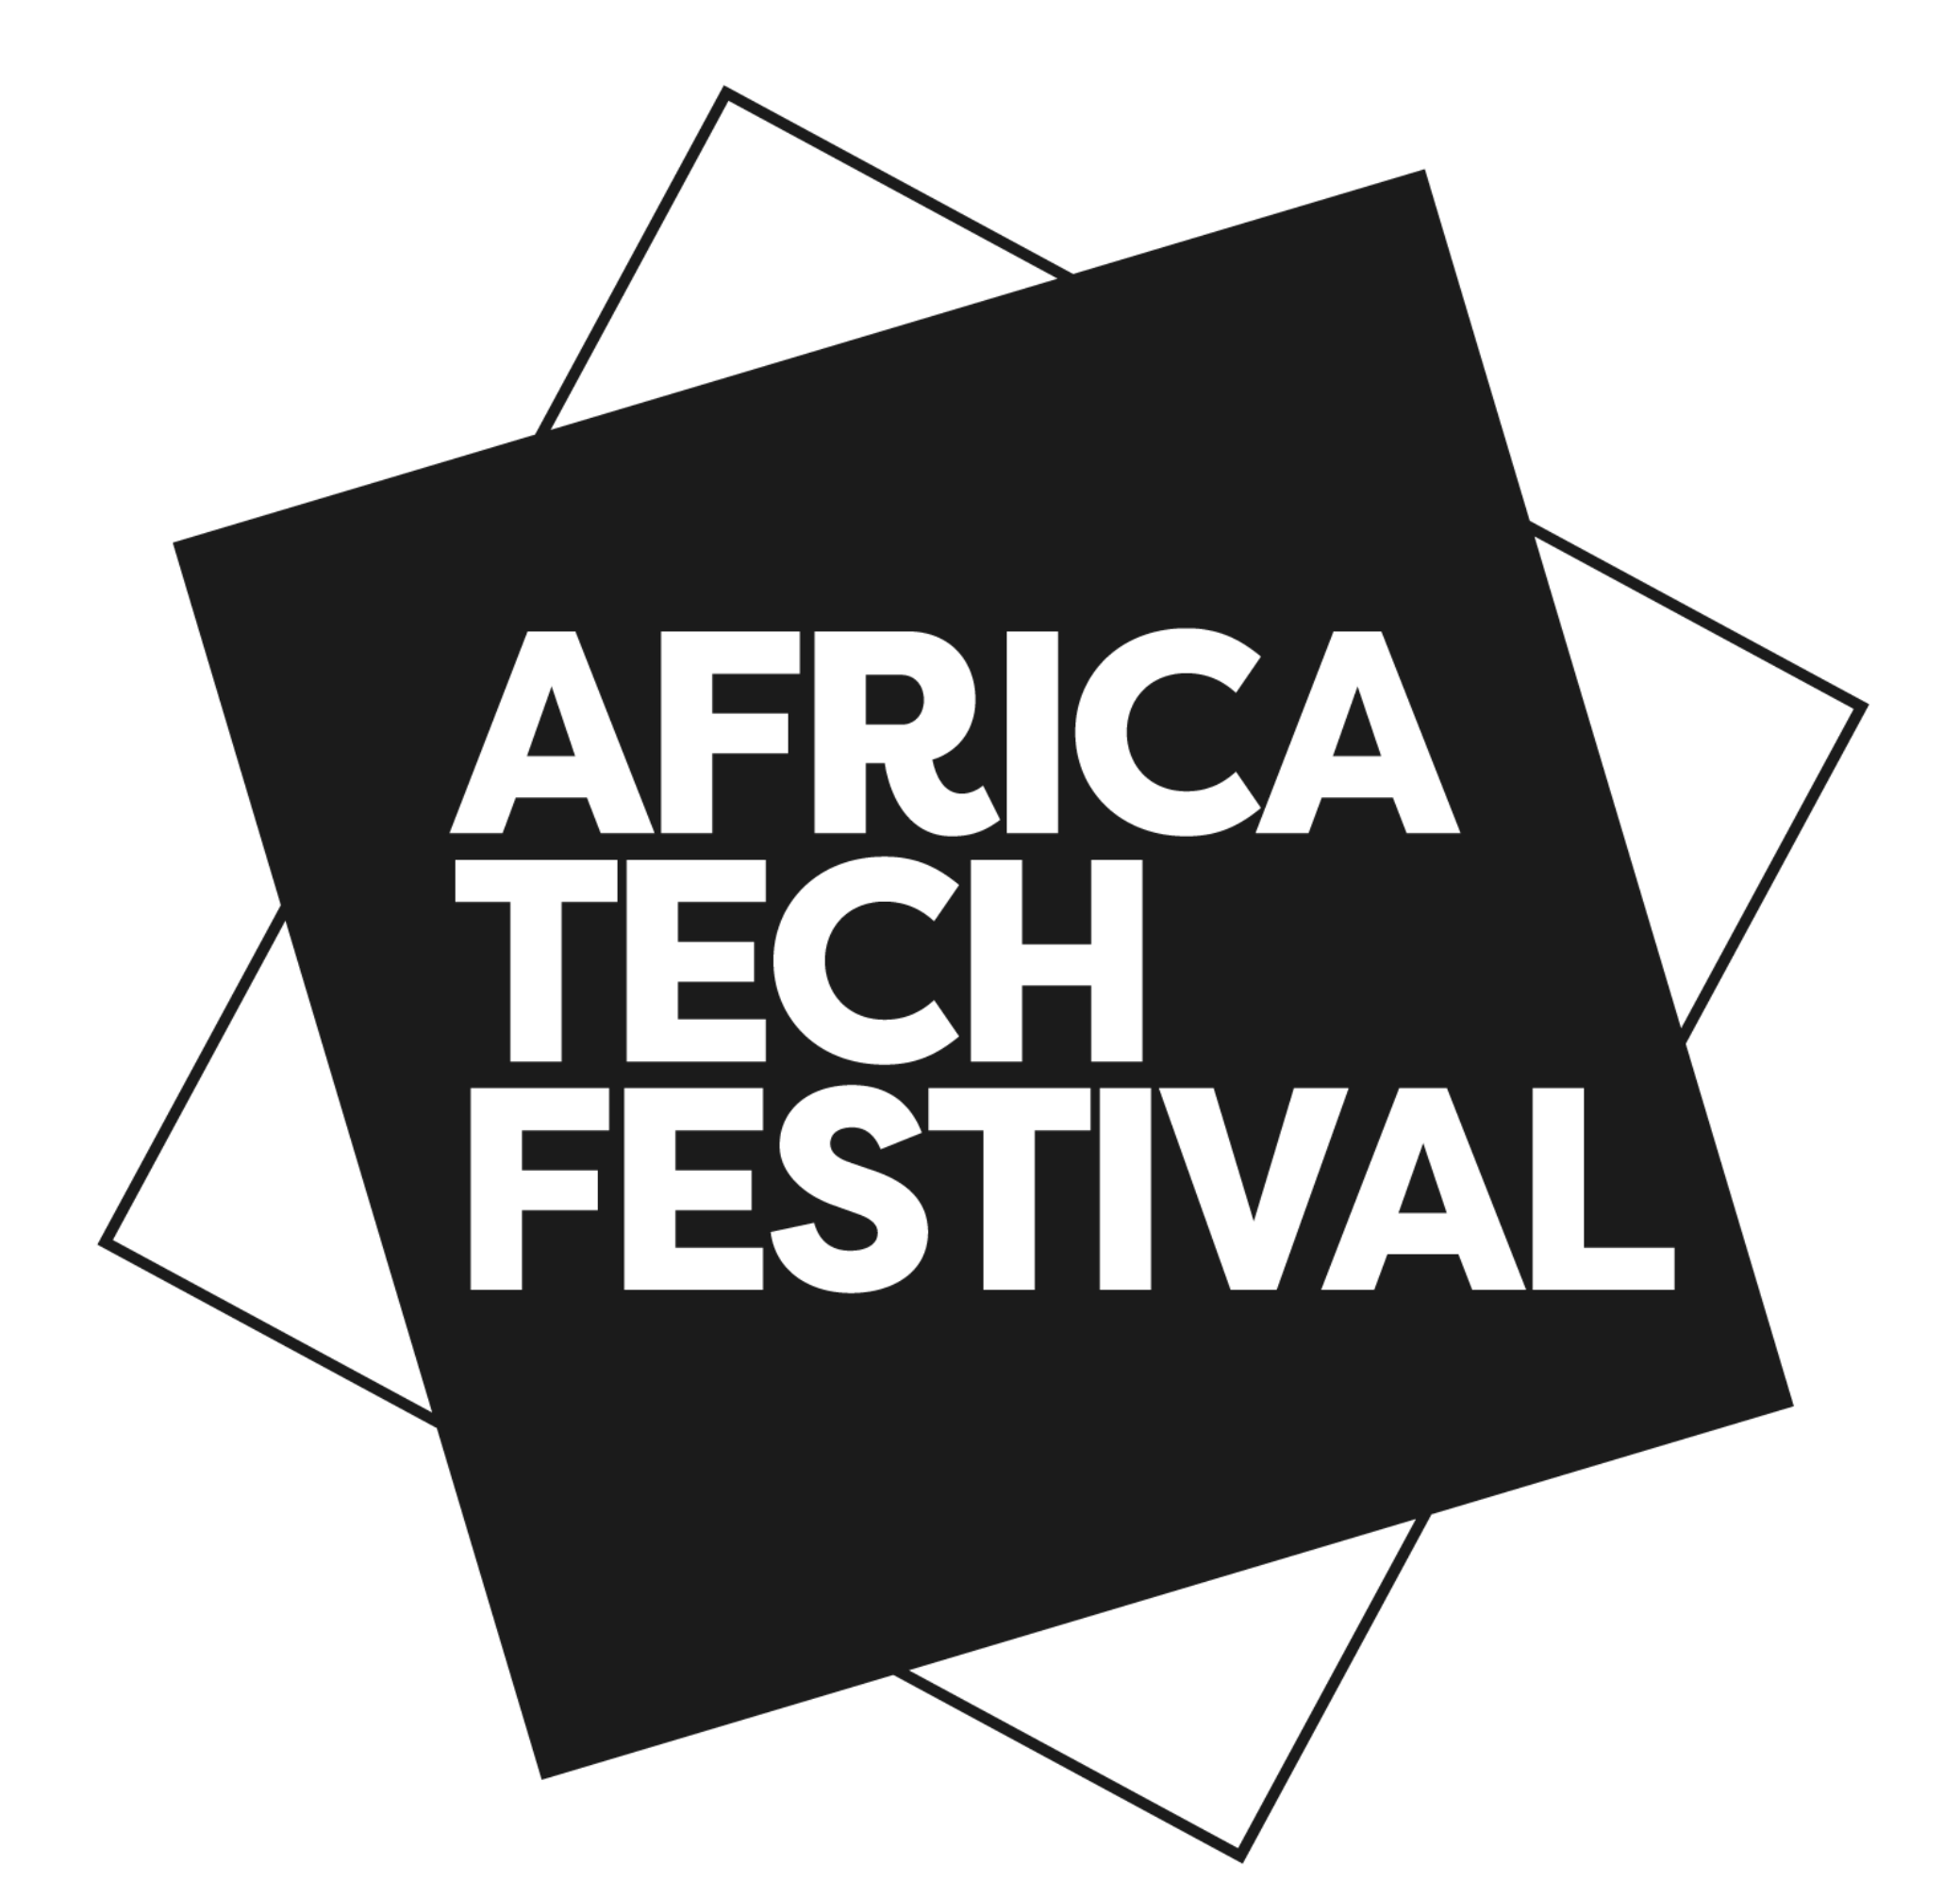 Africa Tech